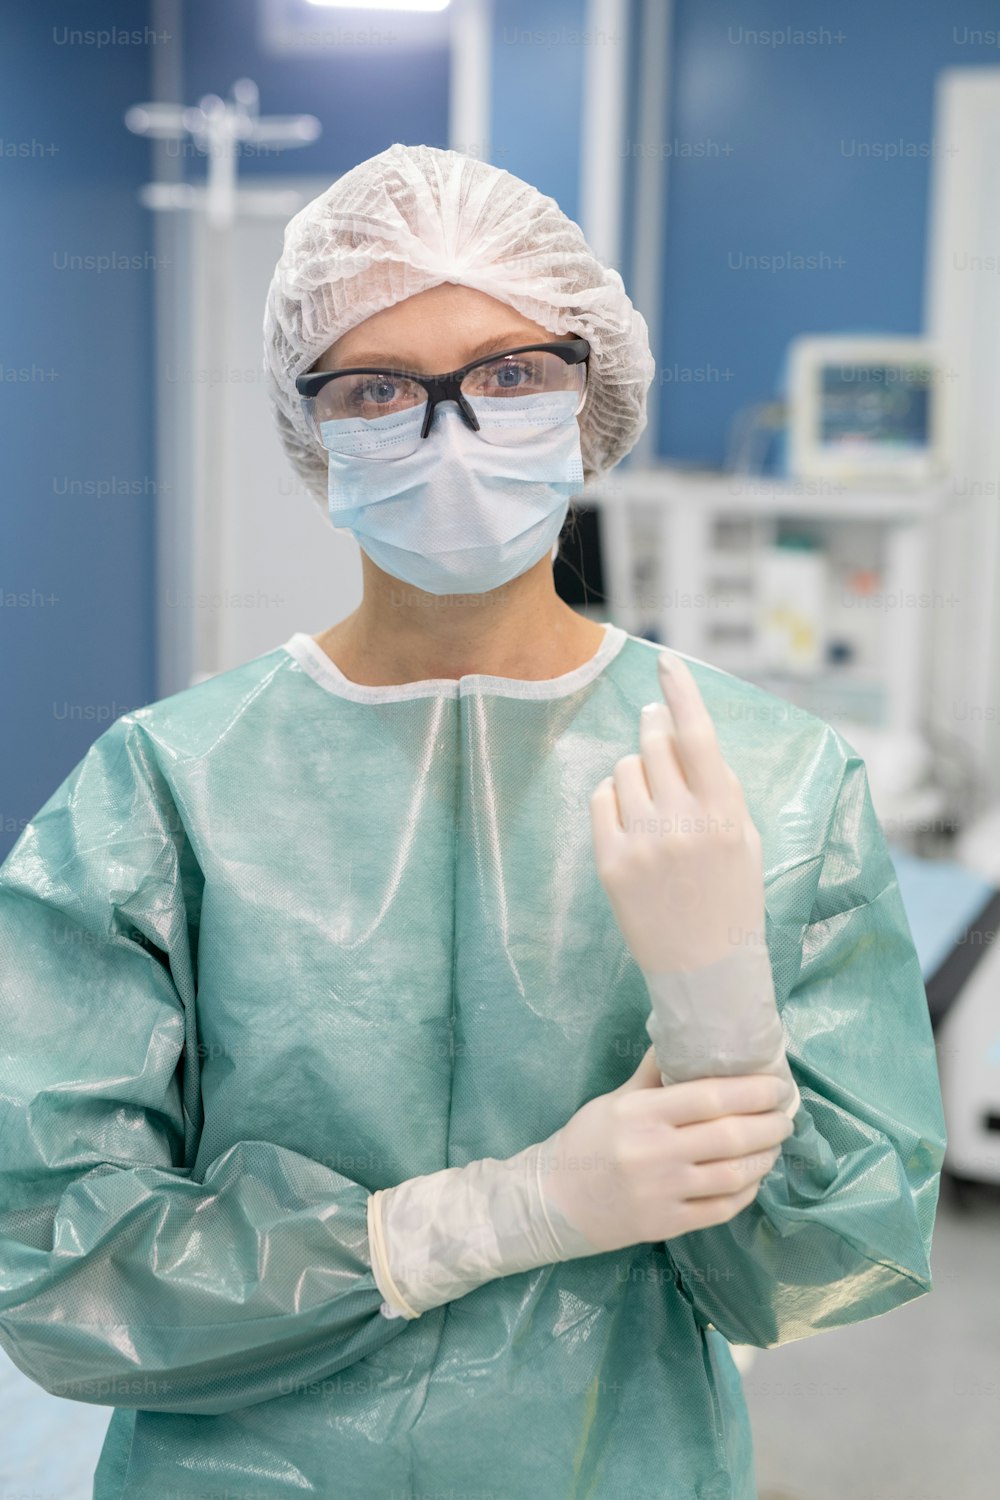 보호복, 장갑, 마스크, 안경, 작업복을 입은 젊은 전문 여성 외과 의사가 수술실에서 카메라 앞에 서 있다